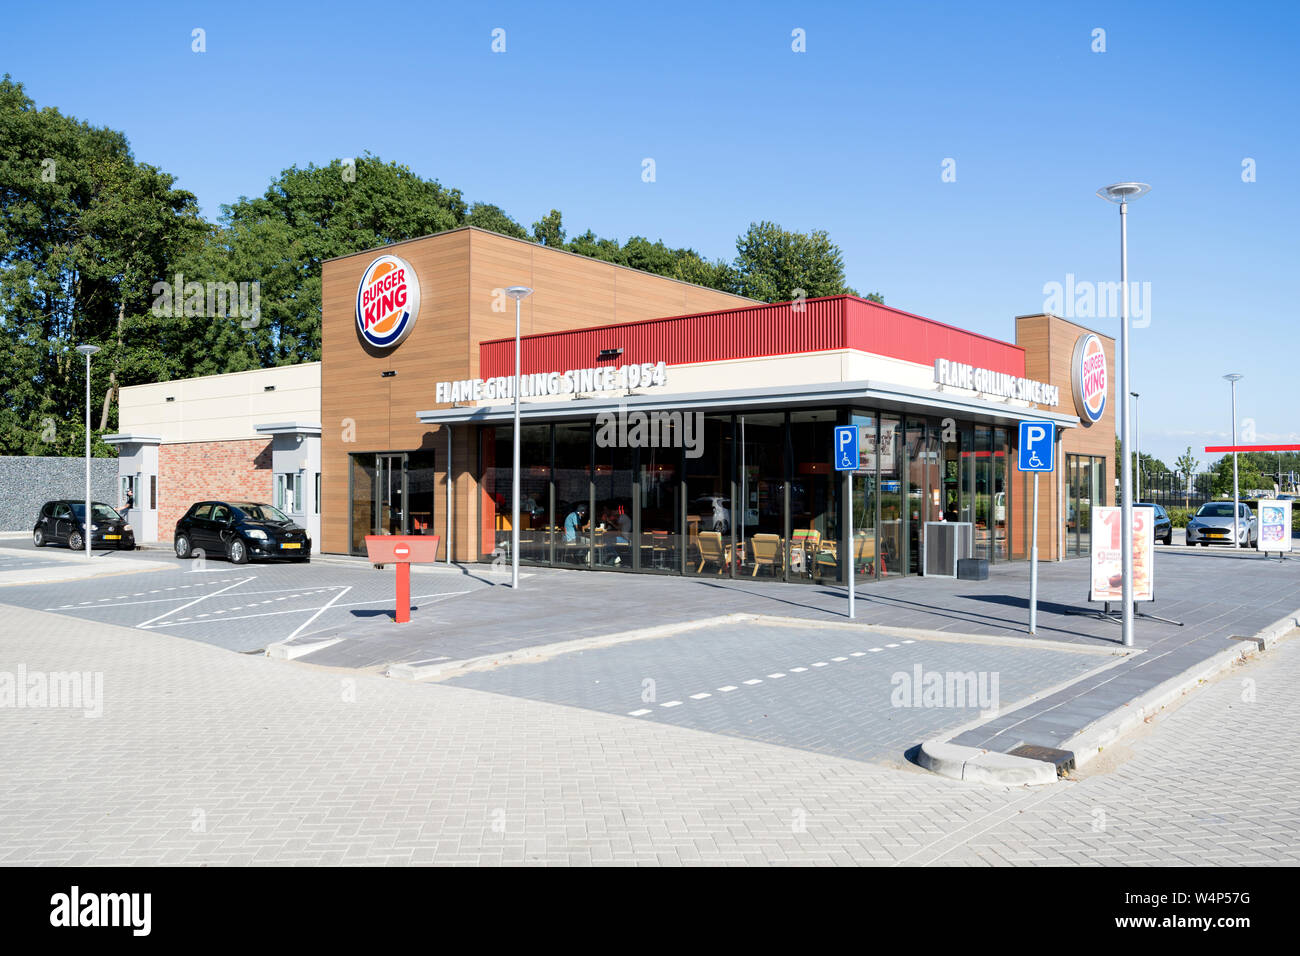 Burger King fast food restaurant in Spijkenisse, The Netherlands. Stock Photo